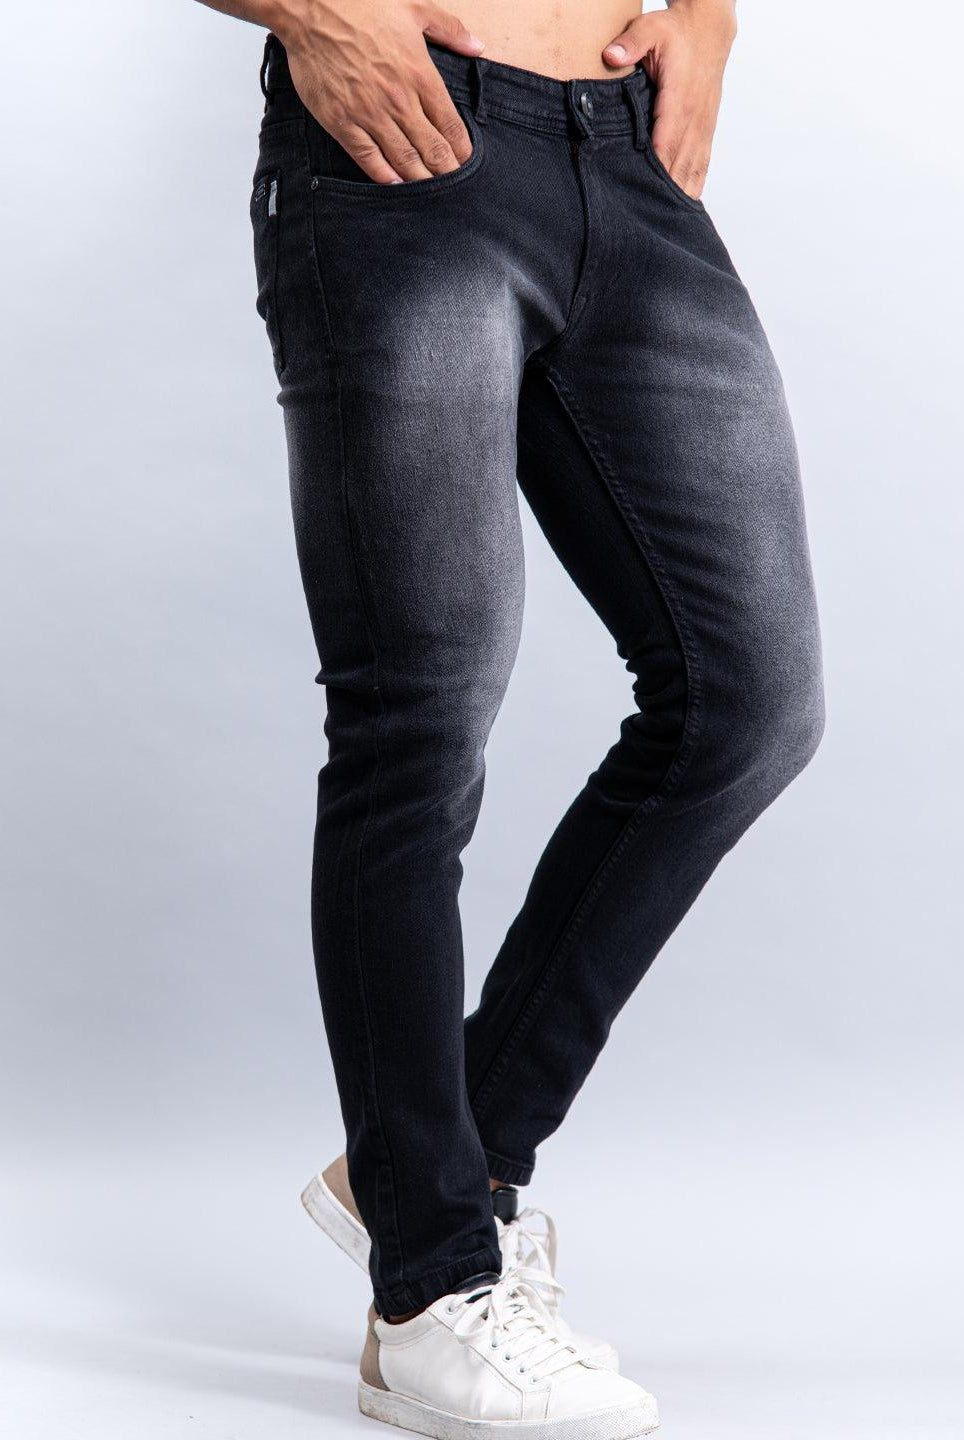 denim black jeans for men